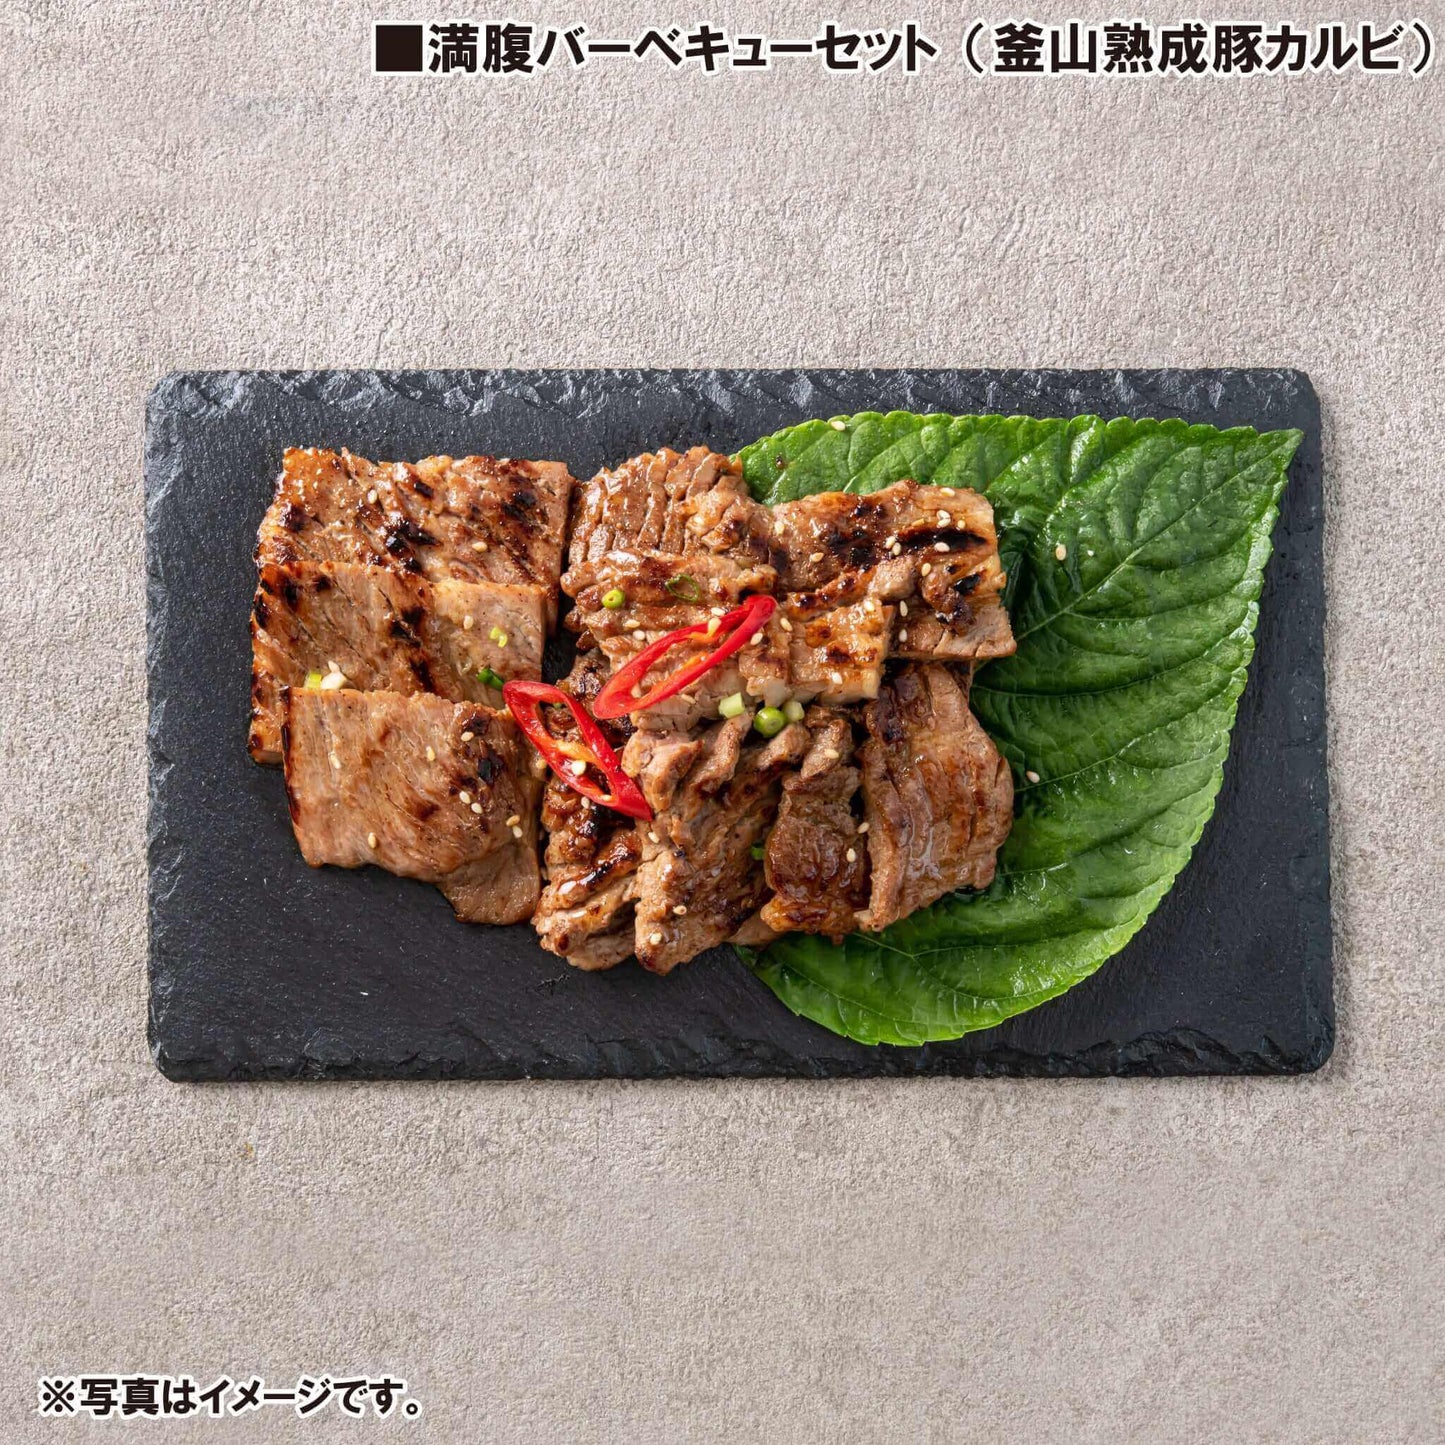 満腹バーベキューセット - 韓国惣菜bibim'ネットストア